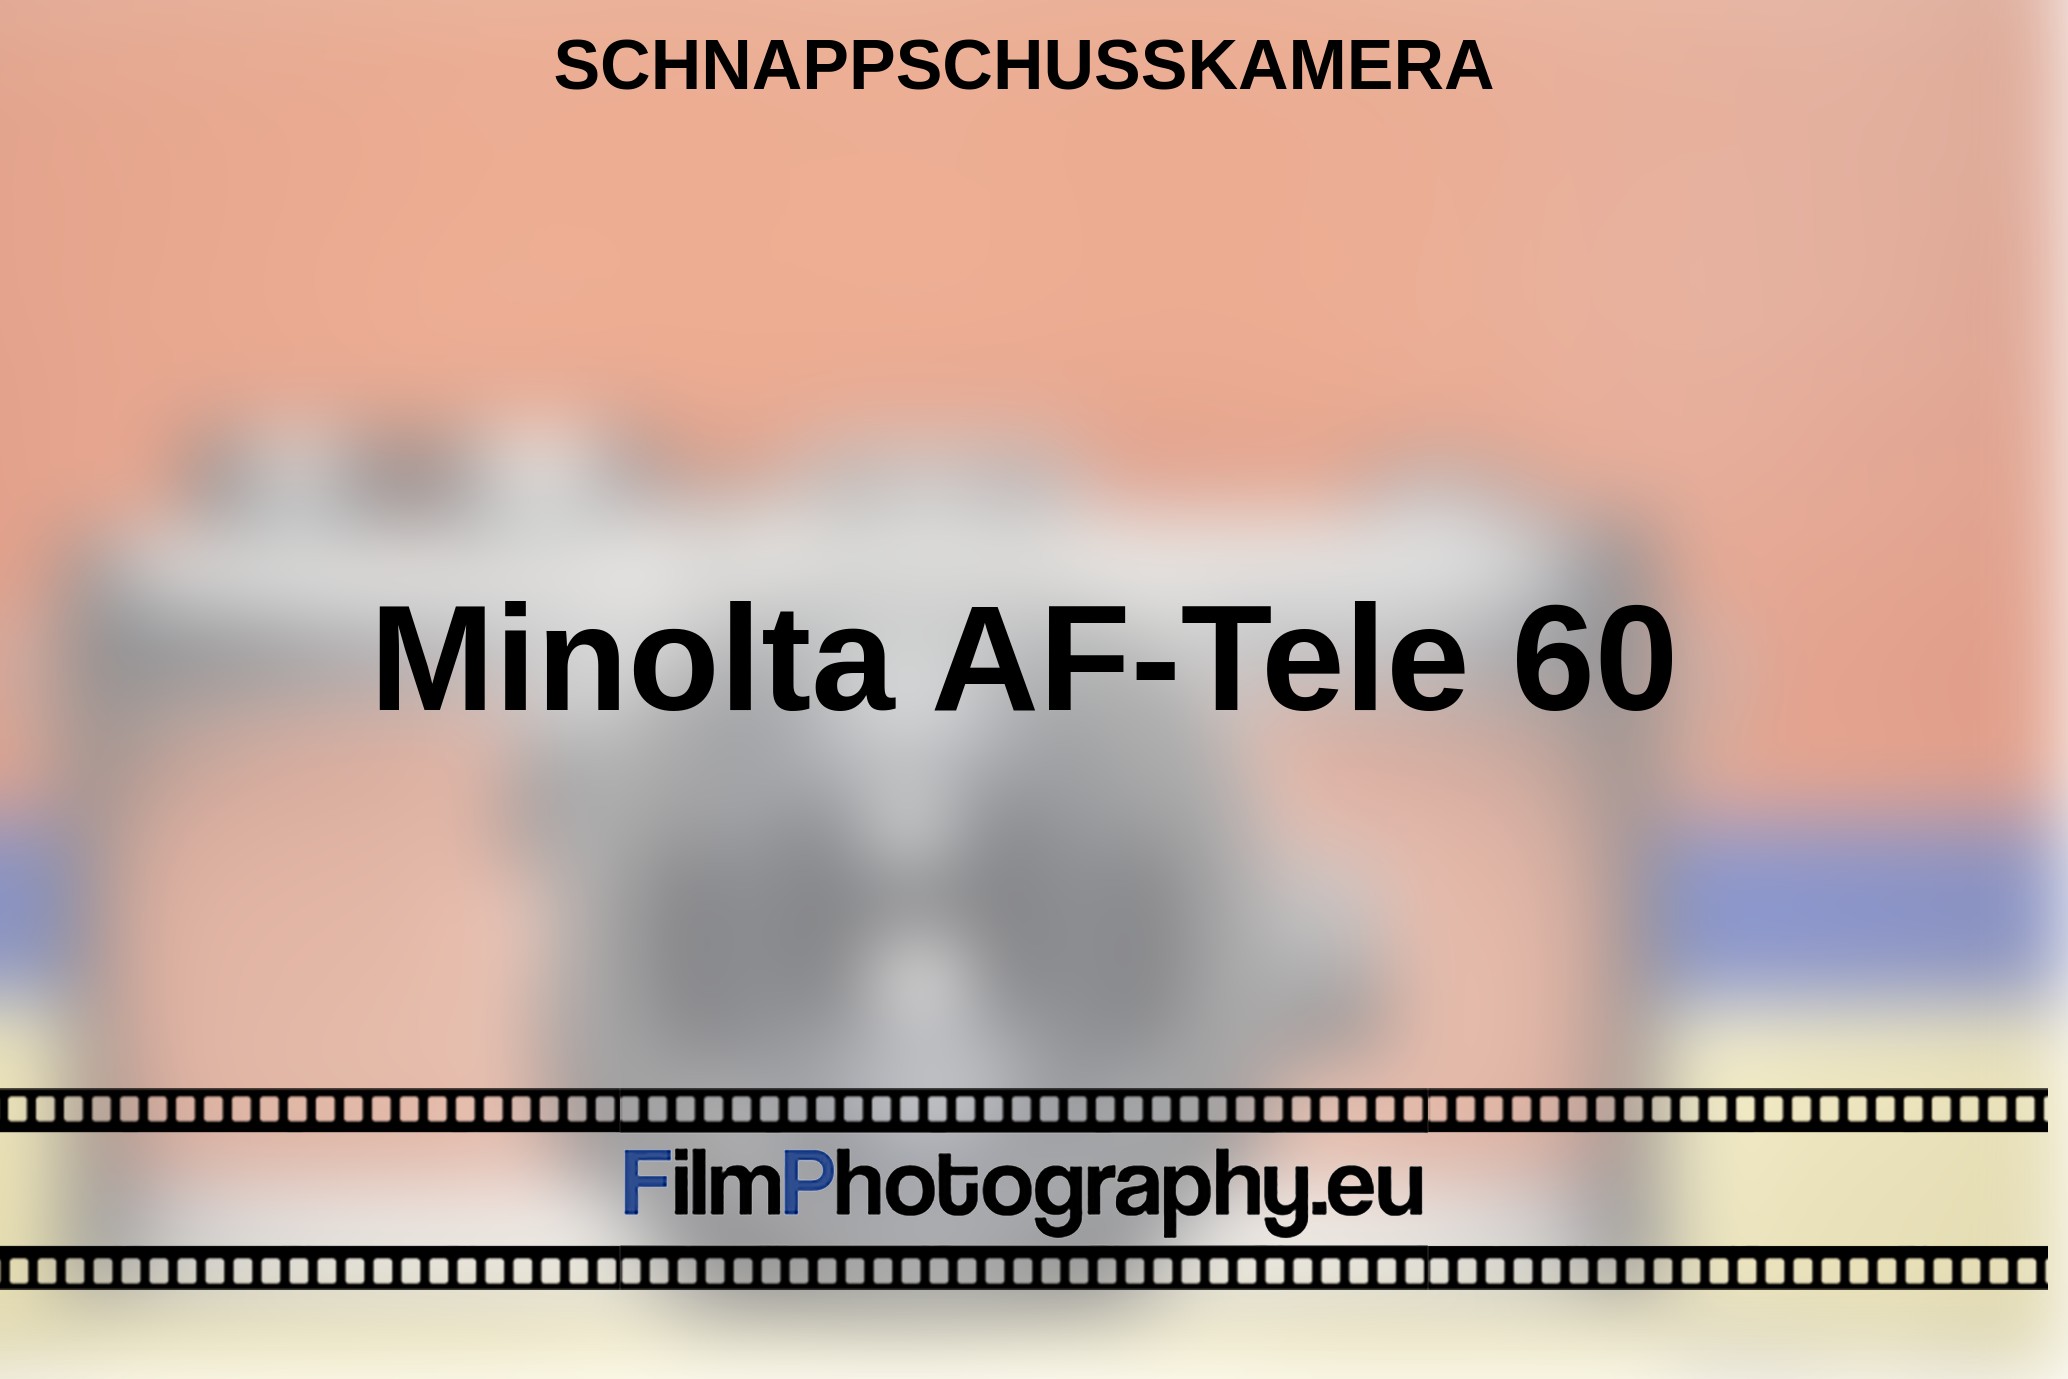 Minolta-AF-Tele-60-Schnappschusskamera-bnv.jpg